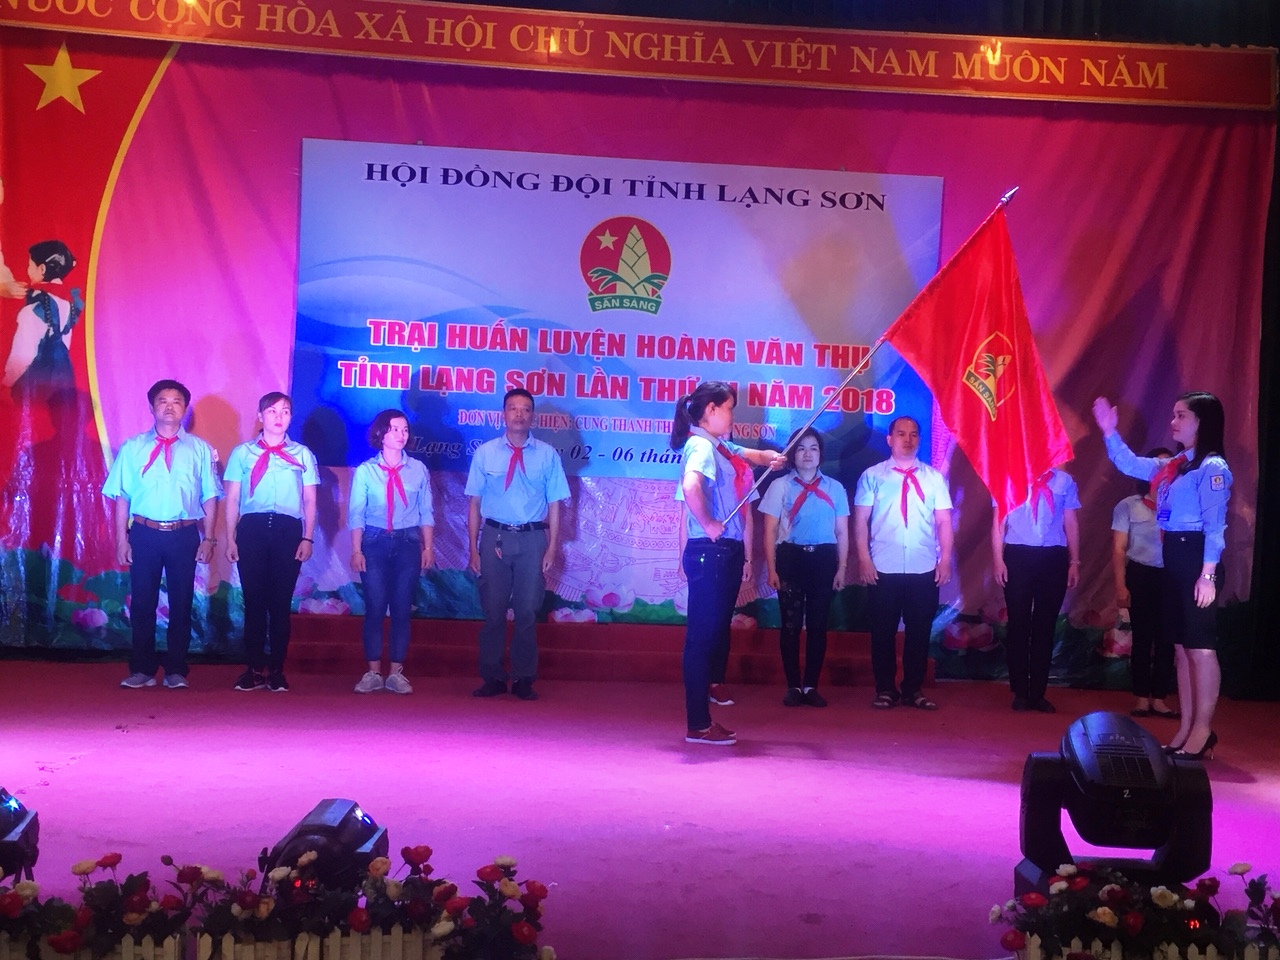 104 trại sinh tham gia Trại huấn luyện Hoàng Văn Thụ tỉnh Lạng Sơn lần thứ III năm 2018